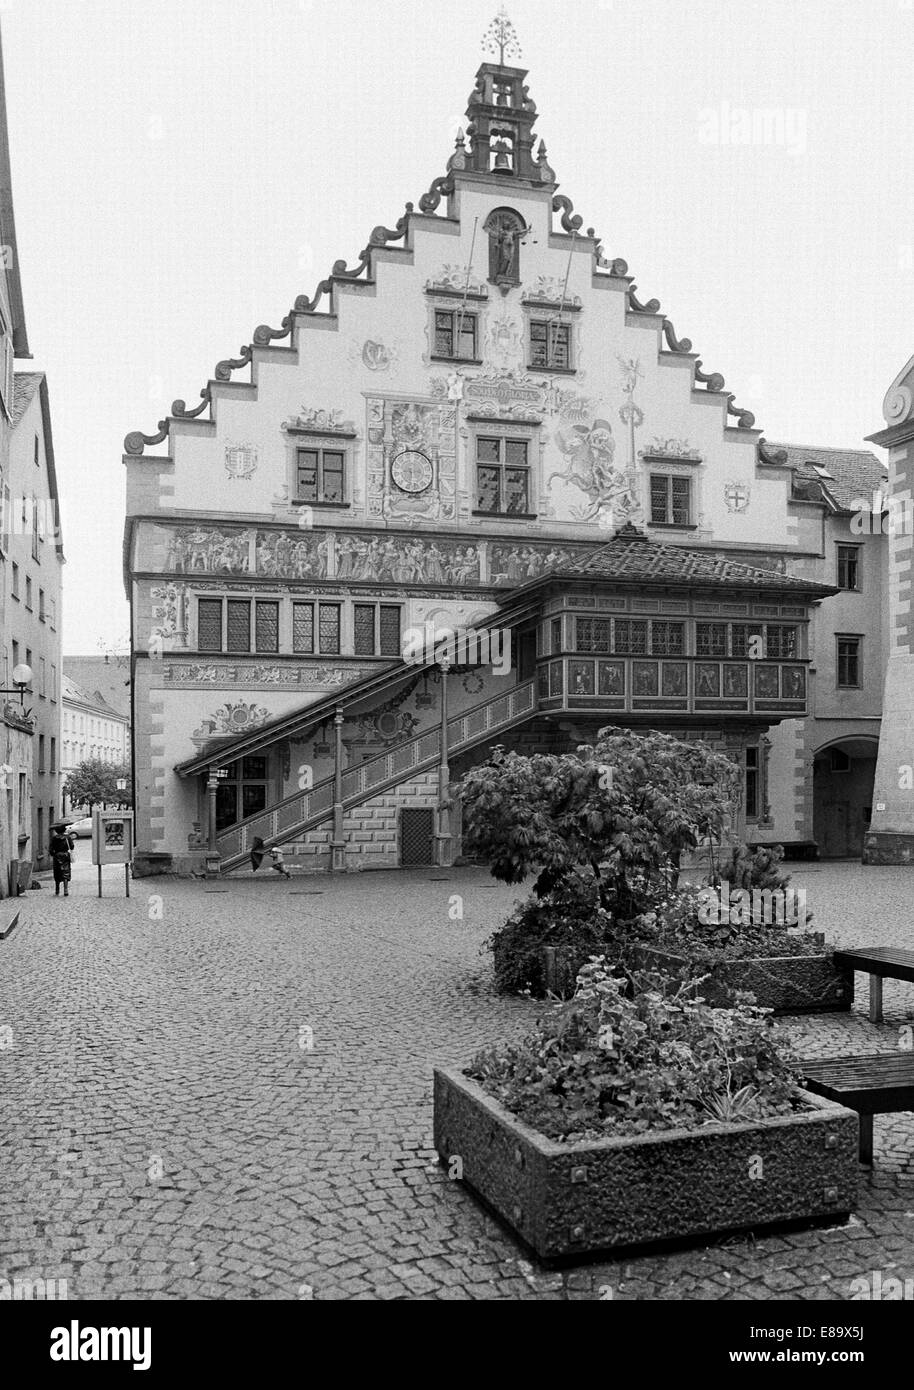 Achtziger Jahre, Renaissancerathaus in Schwaben, Bayern, Lindau (Bodensee), Wandmalerei, Volutengiebel Und Ueberdachte Aussentreppe Stockfoto